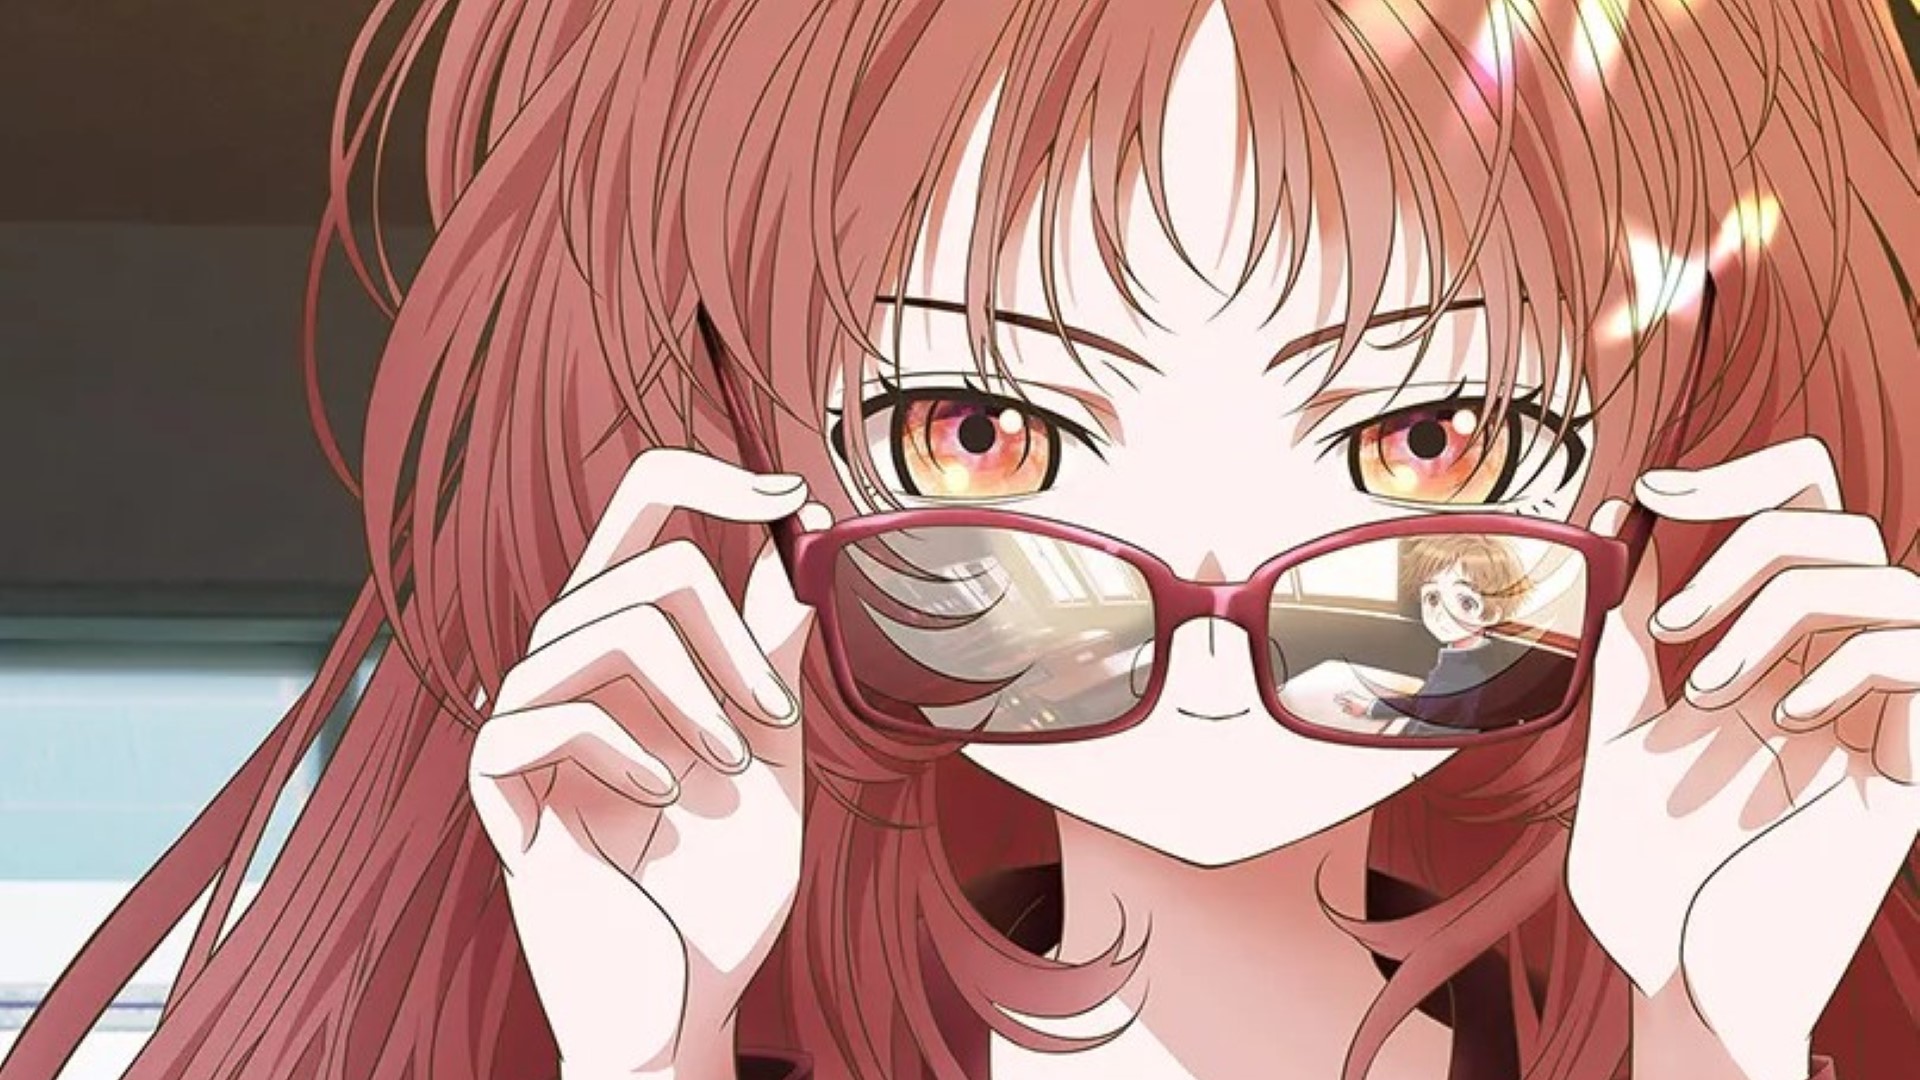 MisterEnzor a X: Dans un anime, il aurait remonté ces lunettes avec cette  tête  / X